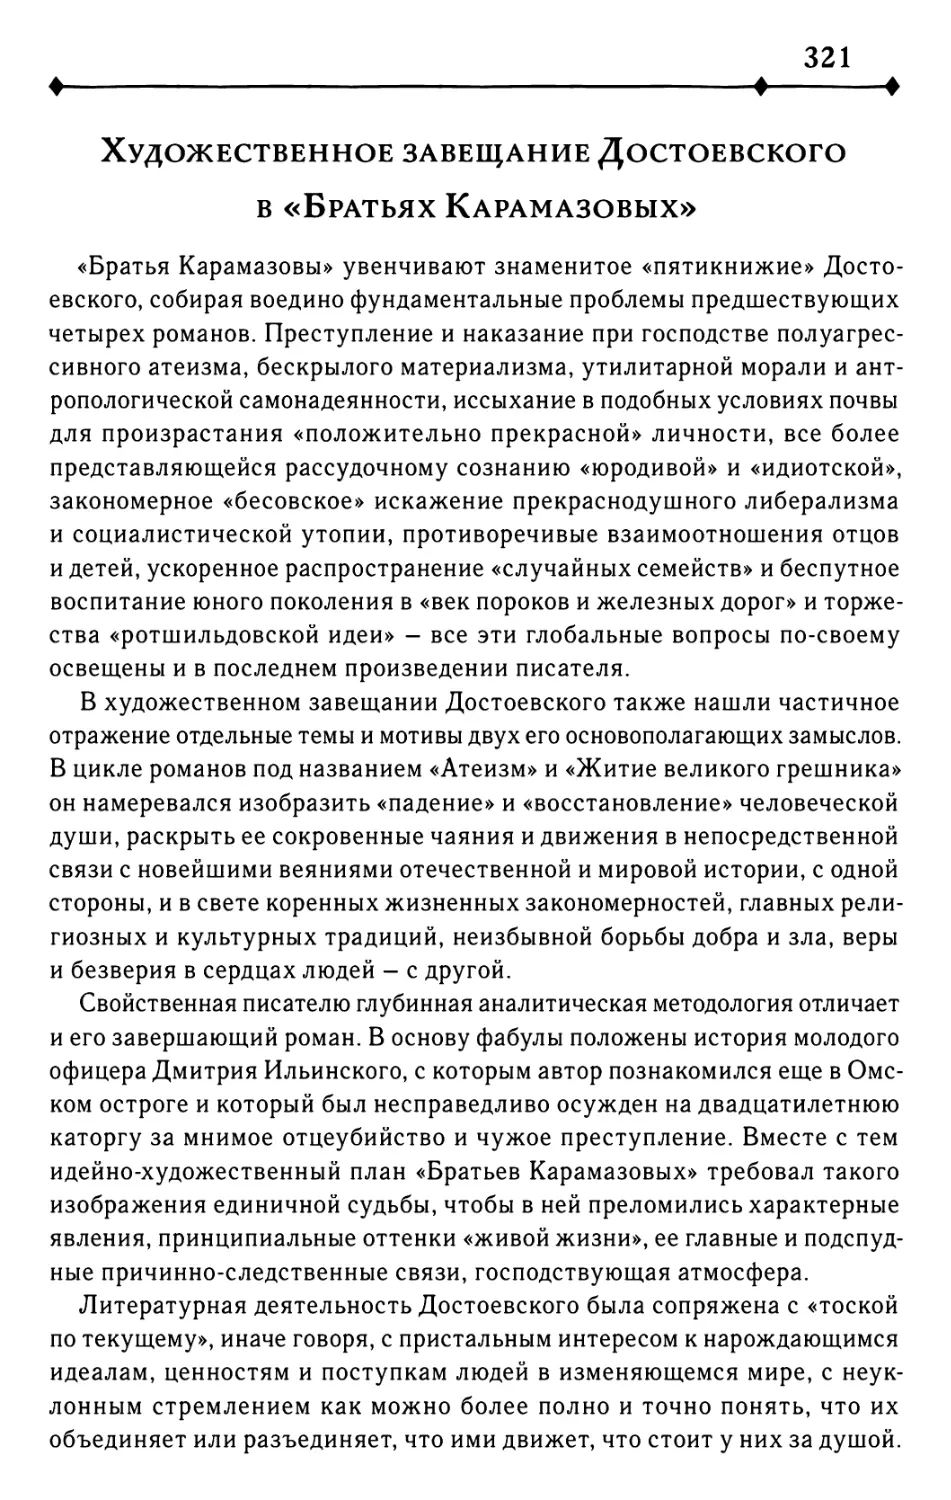 Художественное завещание Достоевского в «Братьях Карамазовых»